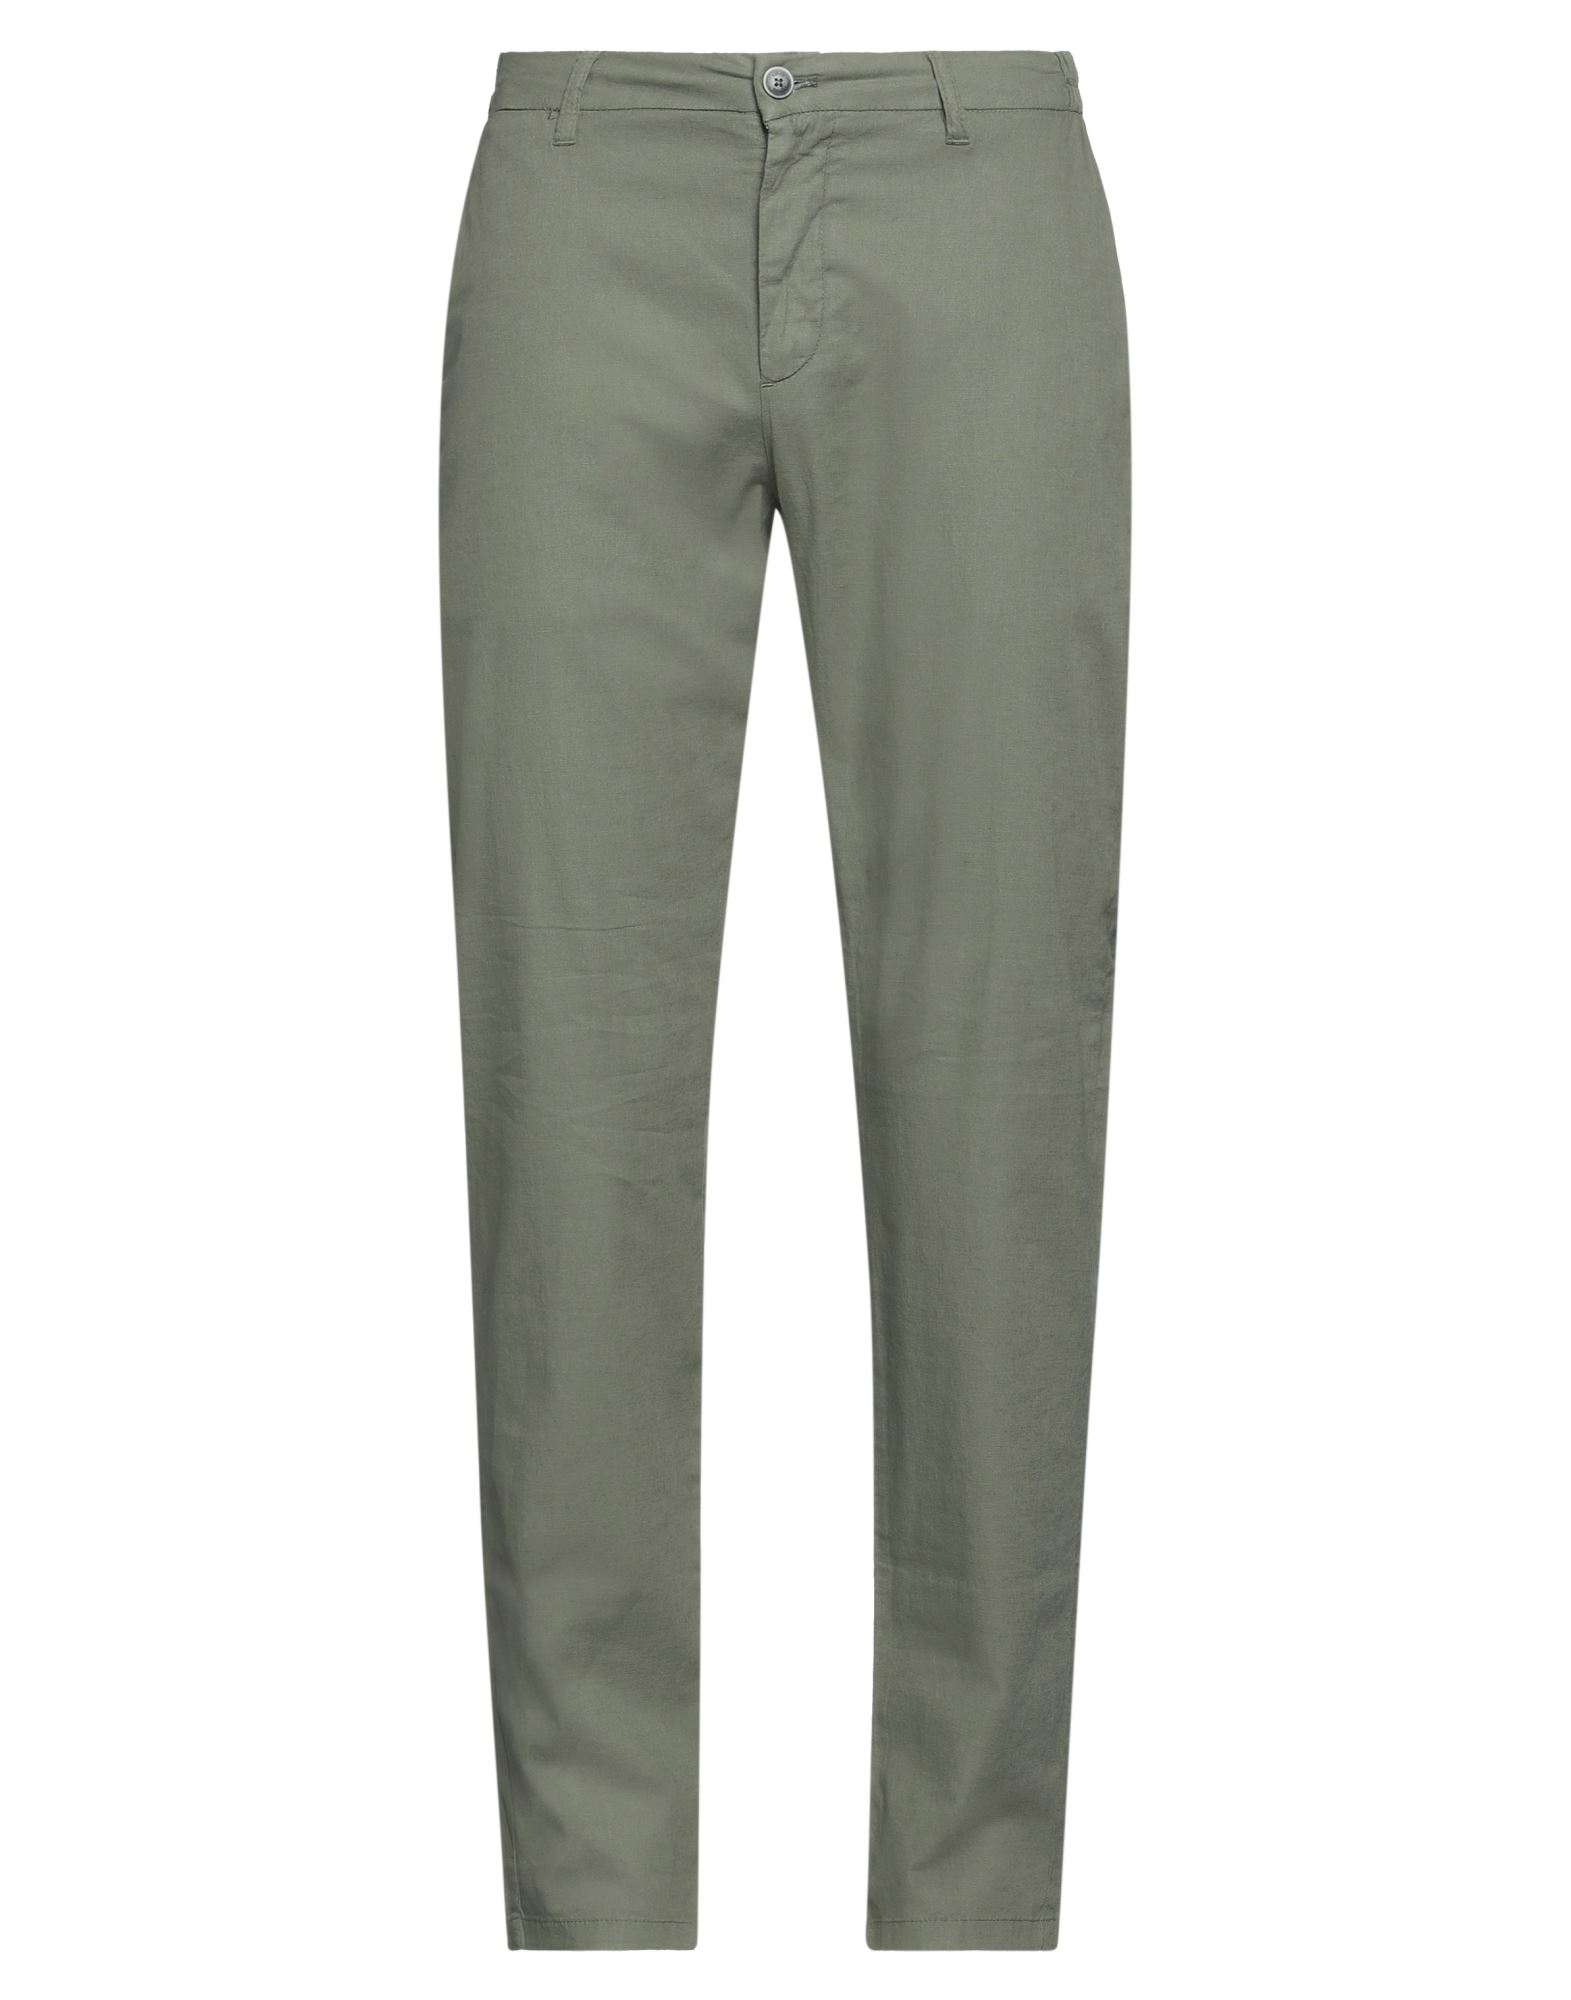 Shop Liu •jo Man Man Pants Green Size 38 Linen, Cotton, Elastane